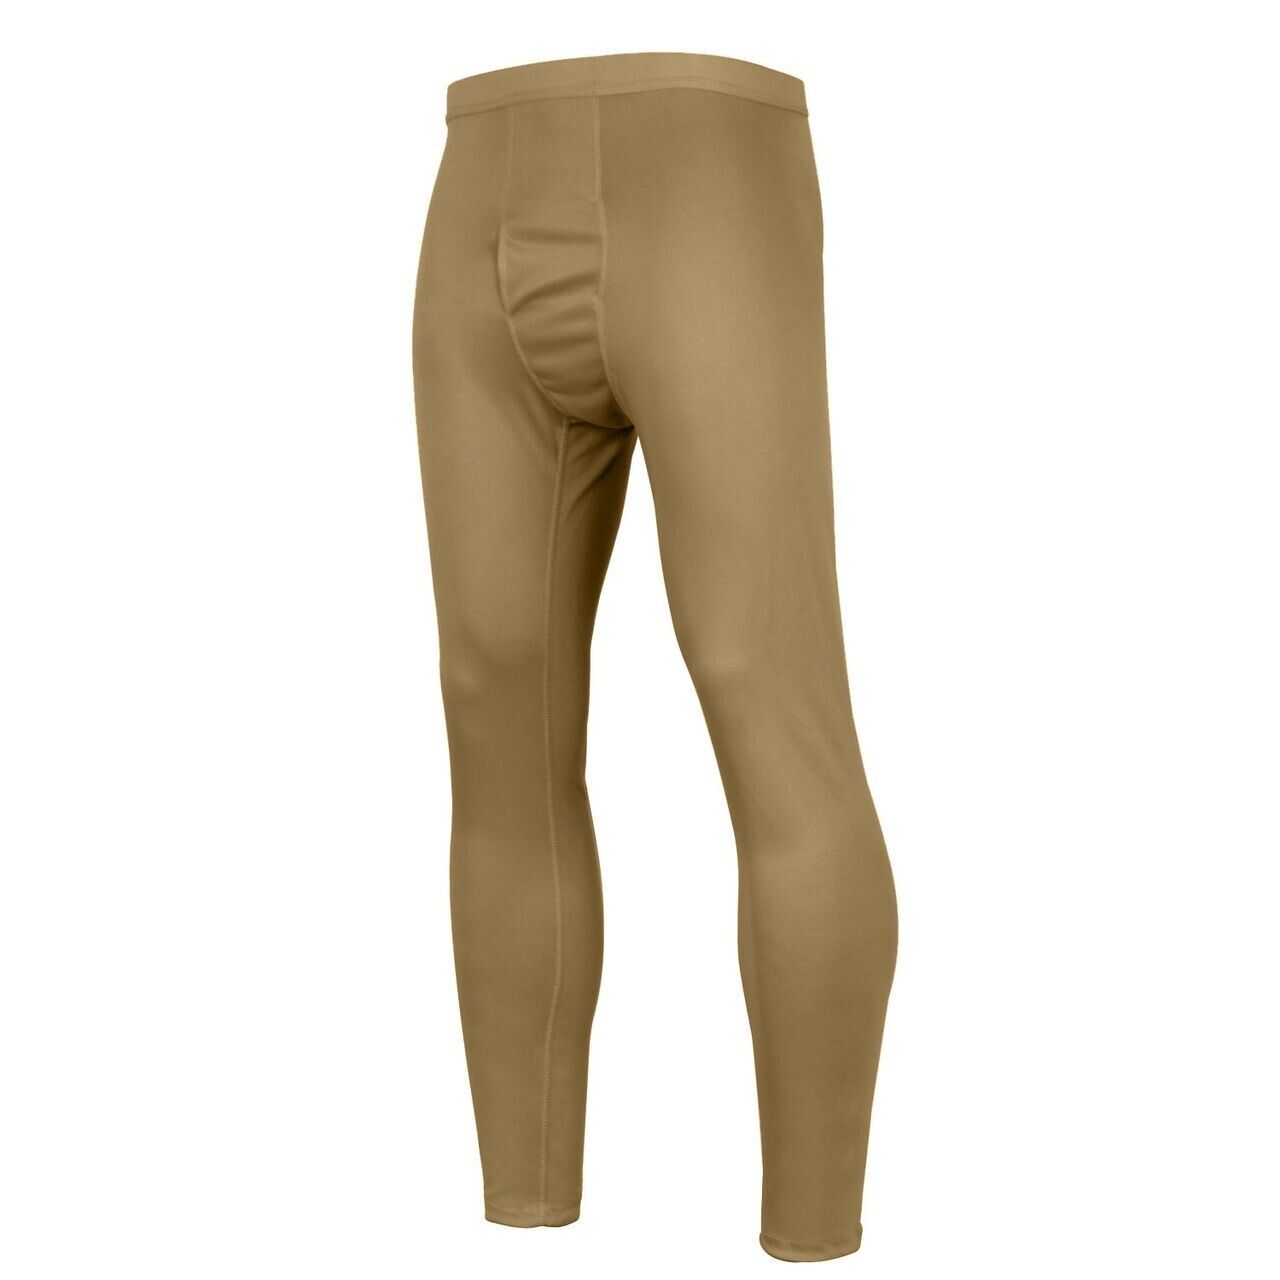 Trouser Pants Medium Reg Brown Light Weight Peckham GEN III 100% Polyester - NIB